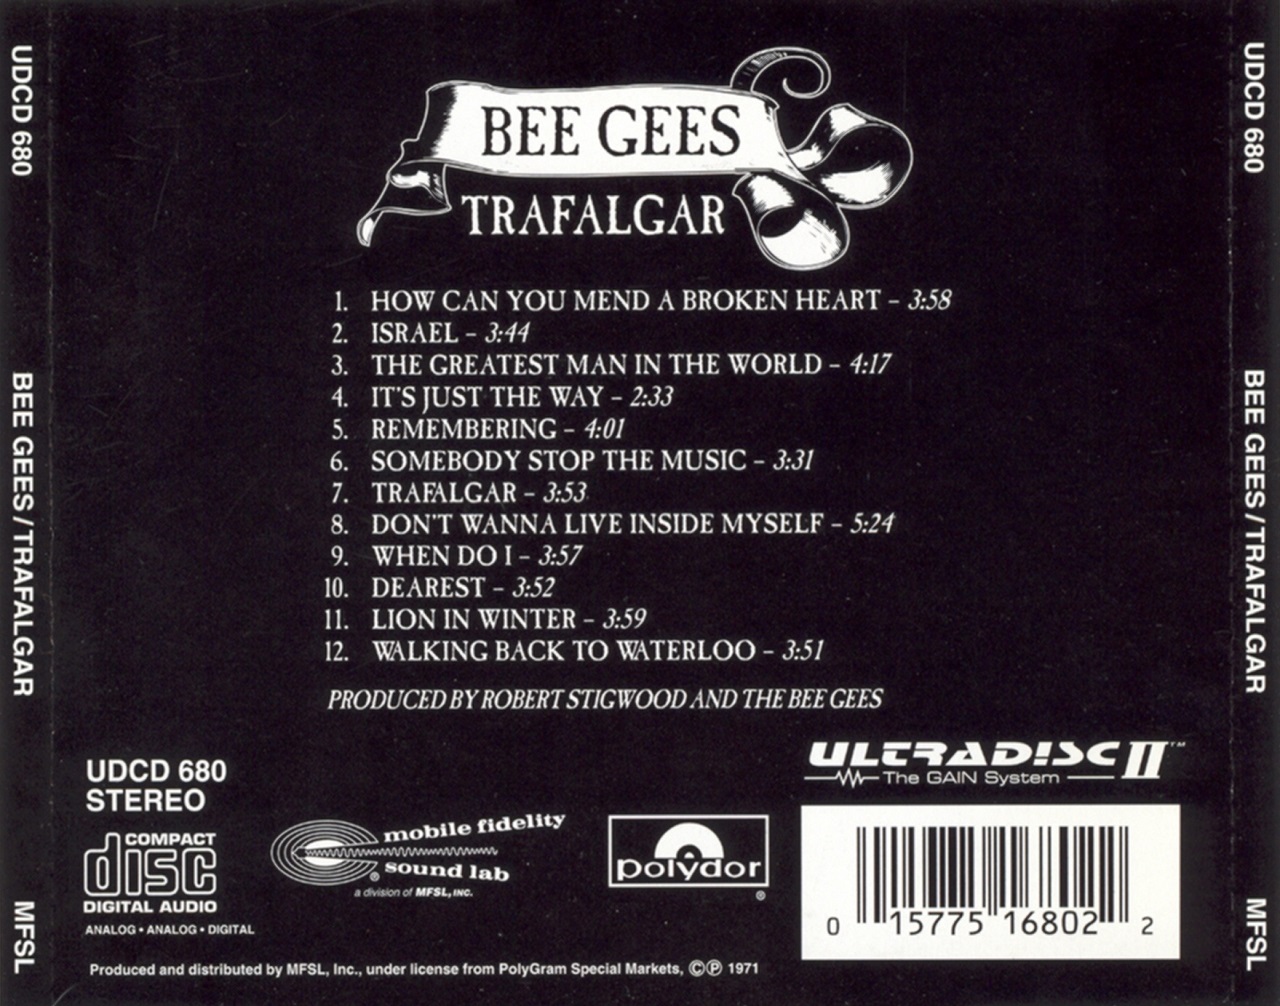 Bee Gees "Trafalgar" .